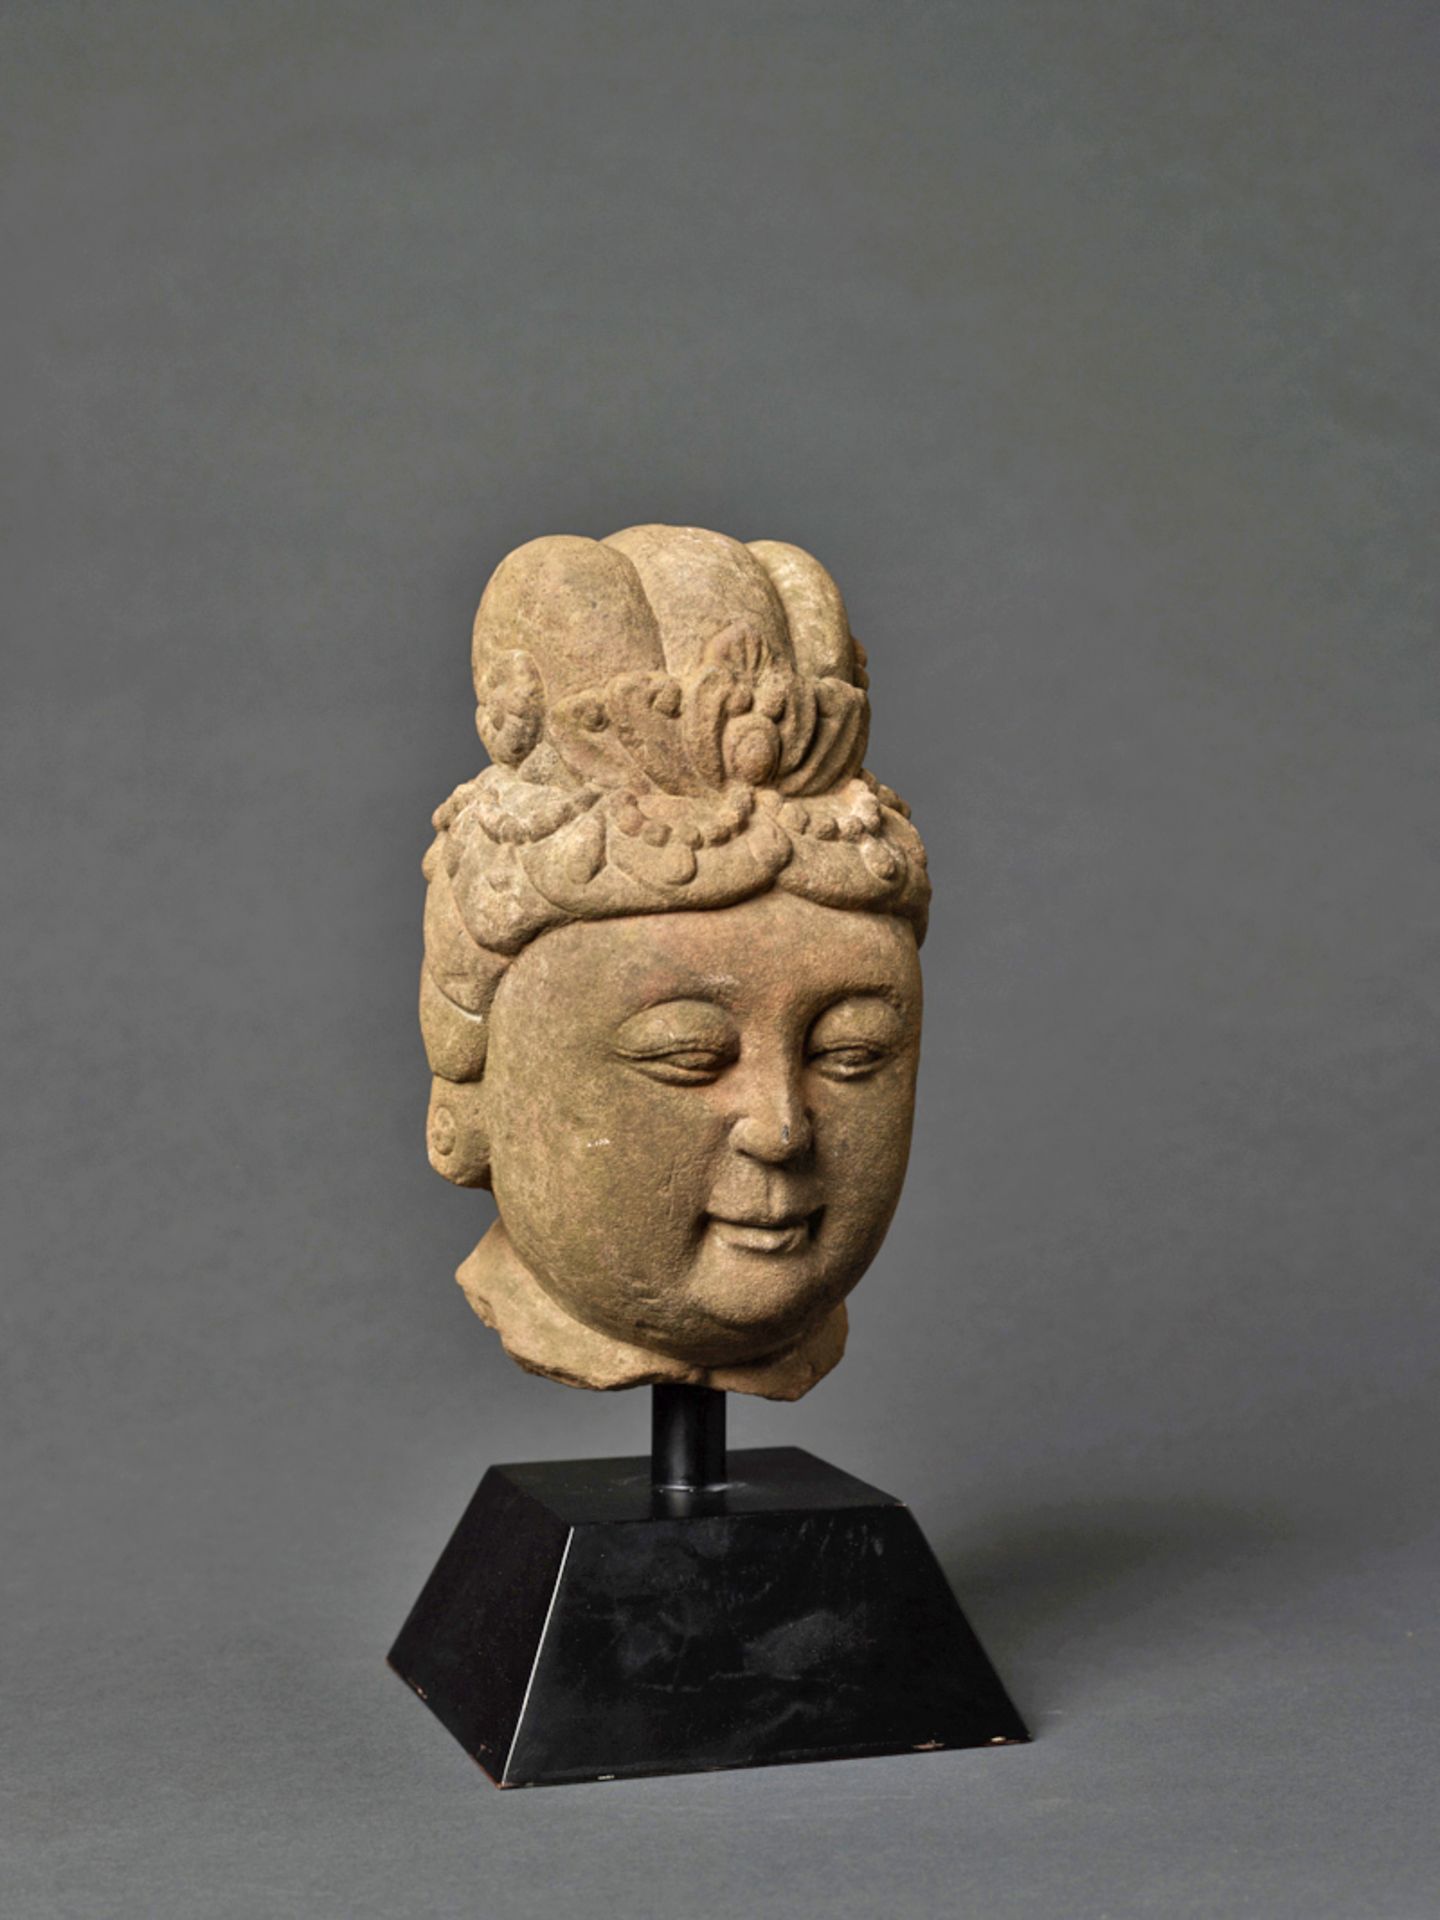 KOPF EINES BODHISATTVASandstein. China, vermutlich Ming-Dynastie (1368 – 1644)Möglicherweise der - Image 2 of 4